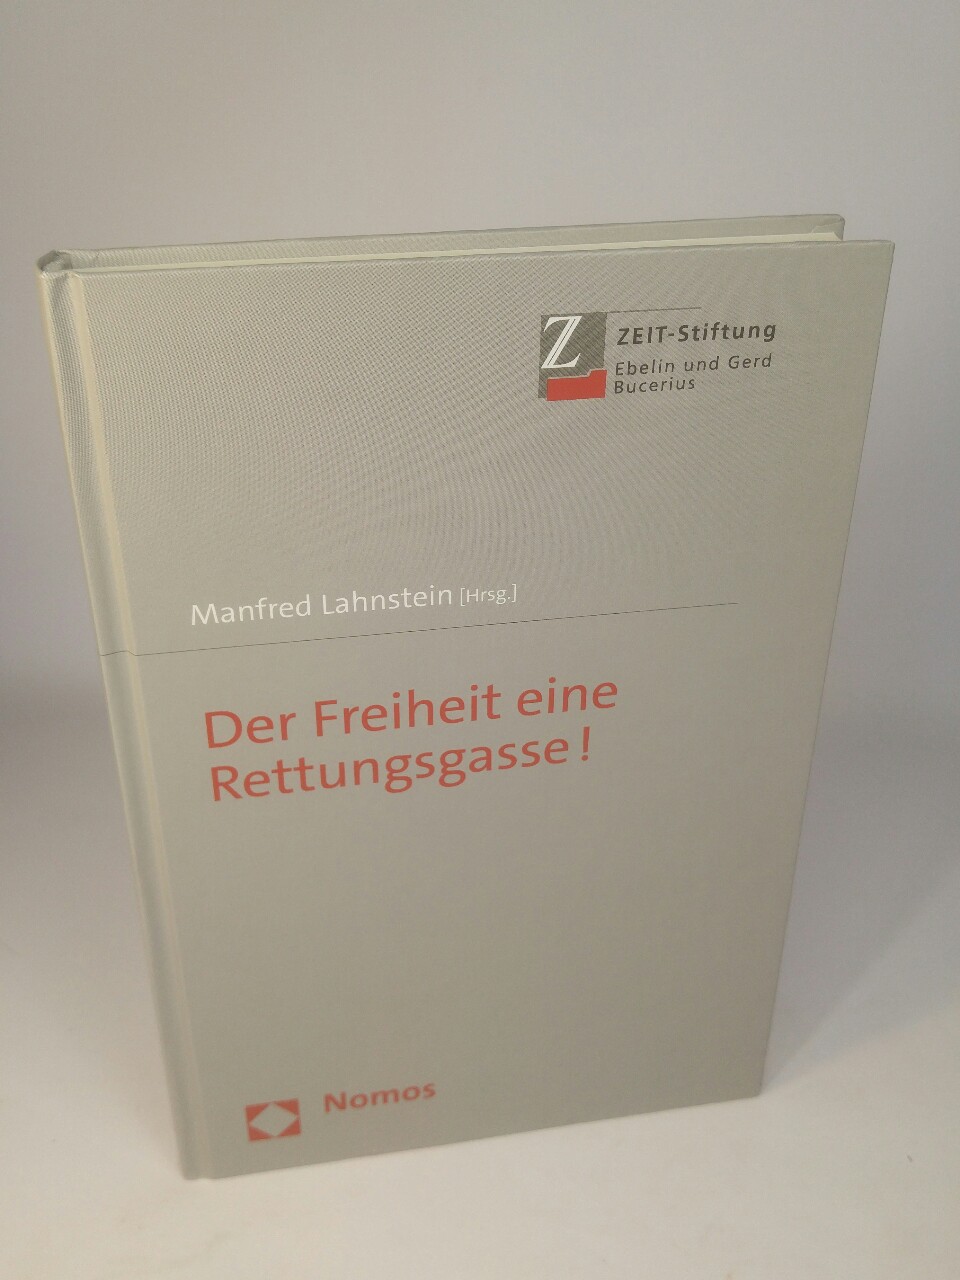 Der Freiheit eine Rettungsgasse!: mit einem Vorwort von Prof. Dr. Burkhard Schwenker. - Lahnstein (Hrsg.), Manfred